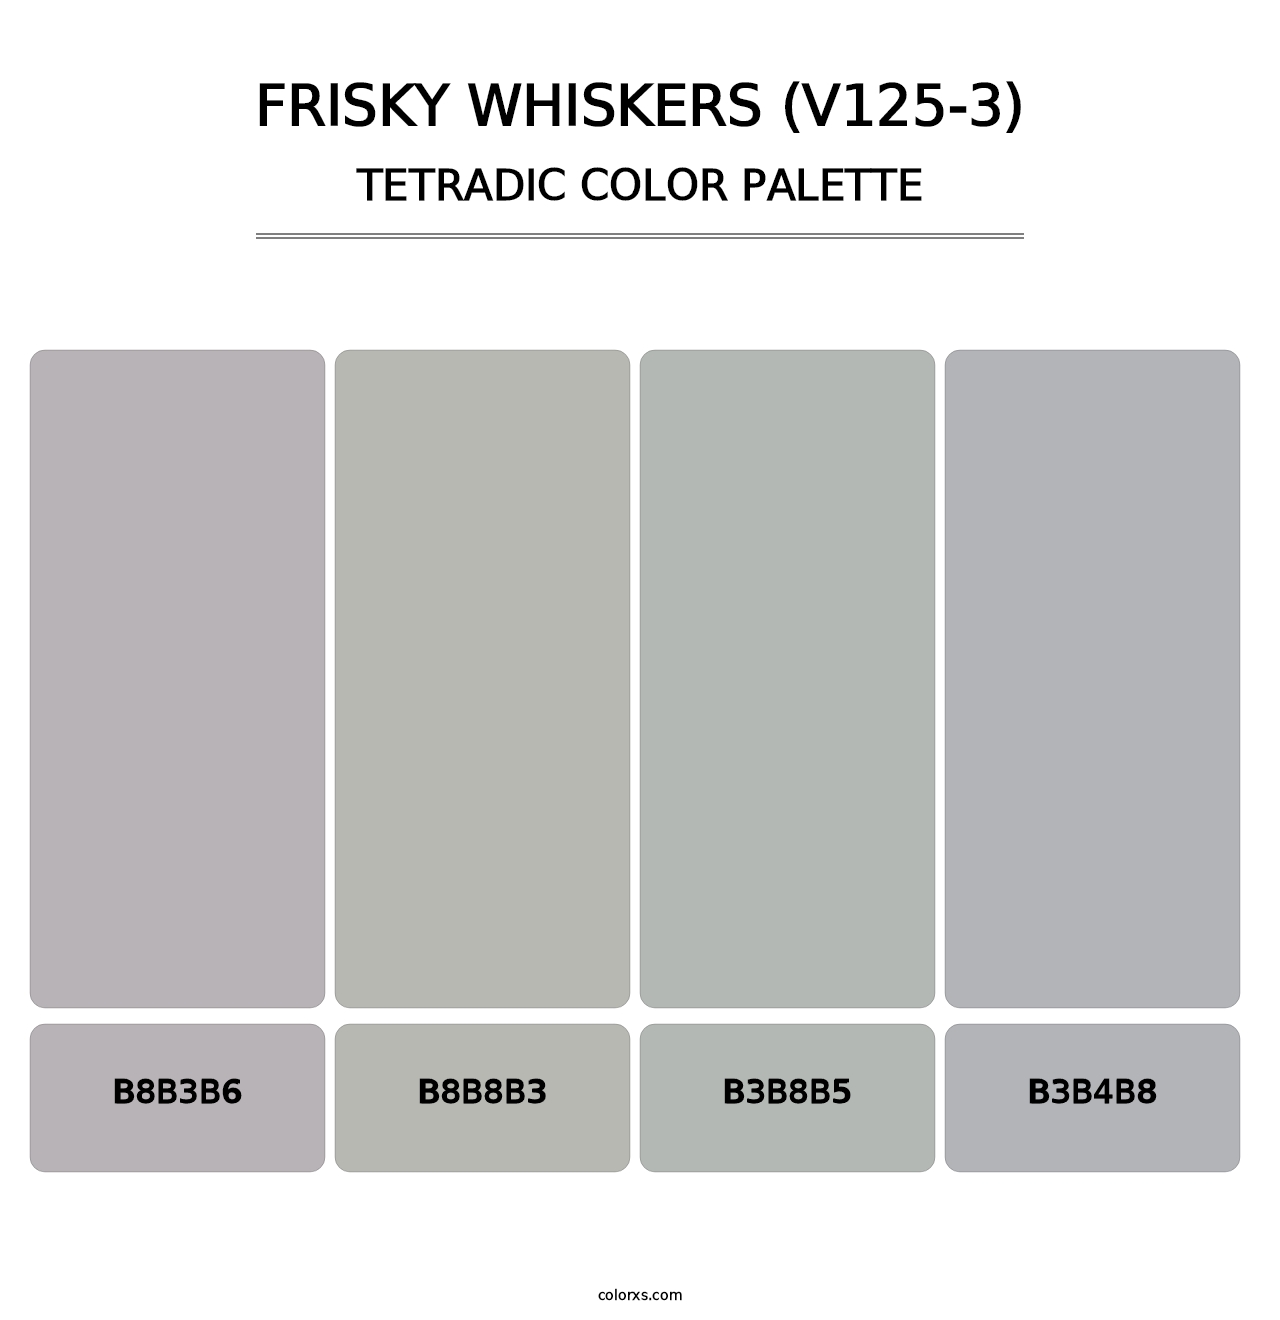 Frisky Whiskers (V125-3) - Tetradic Color Palette